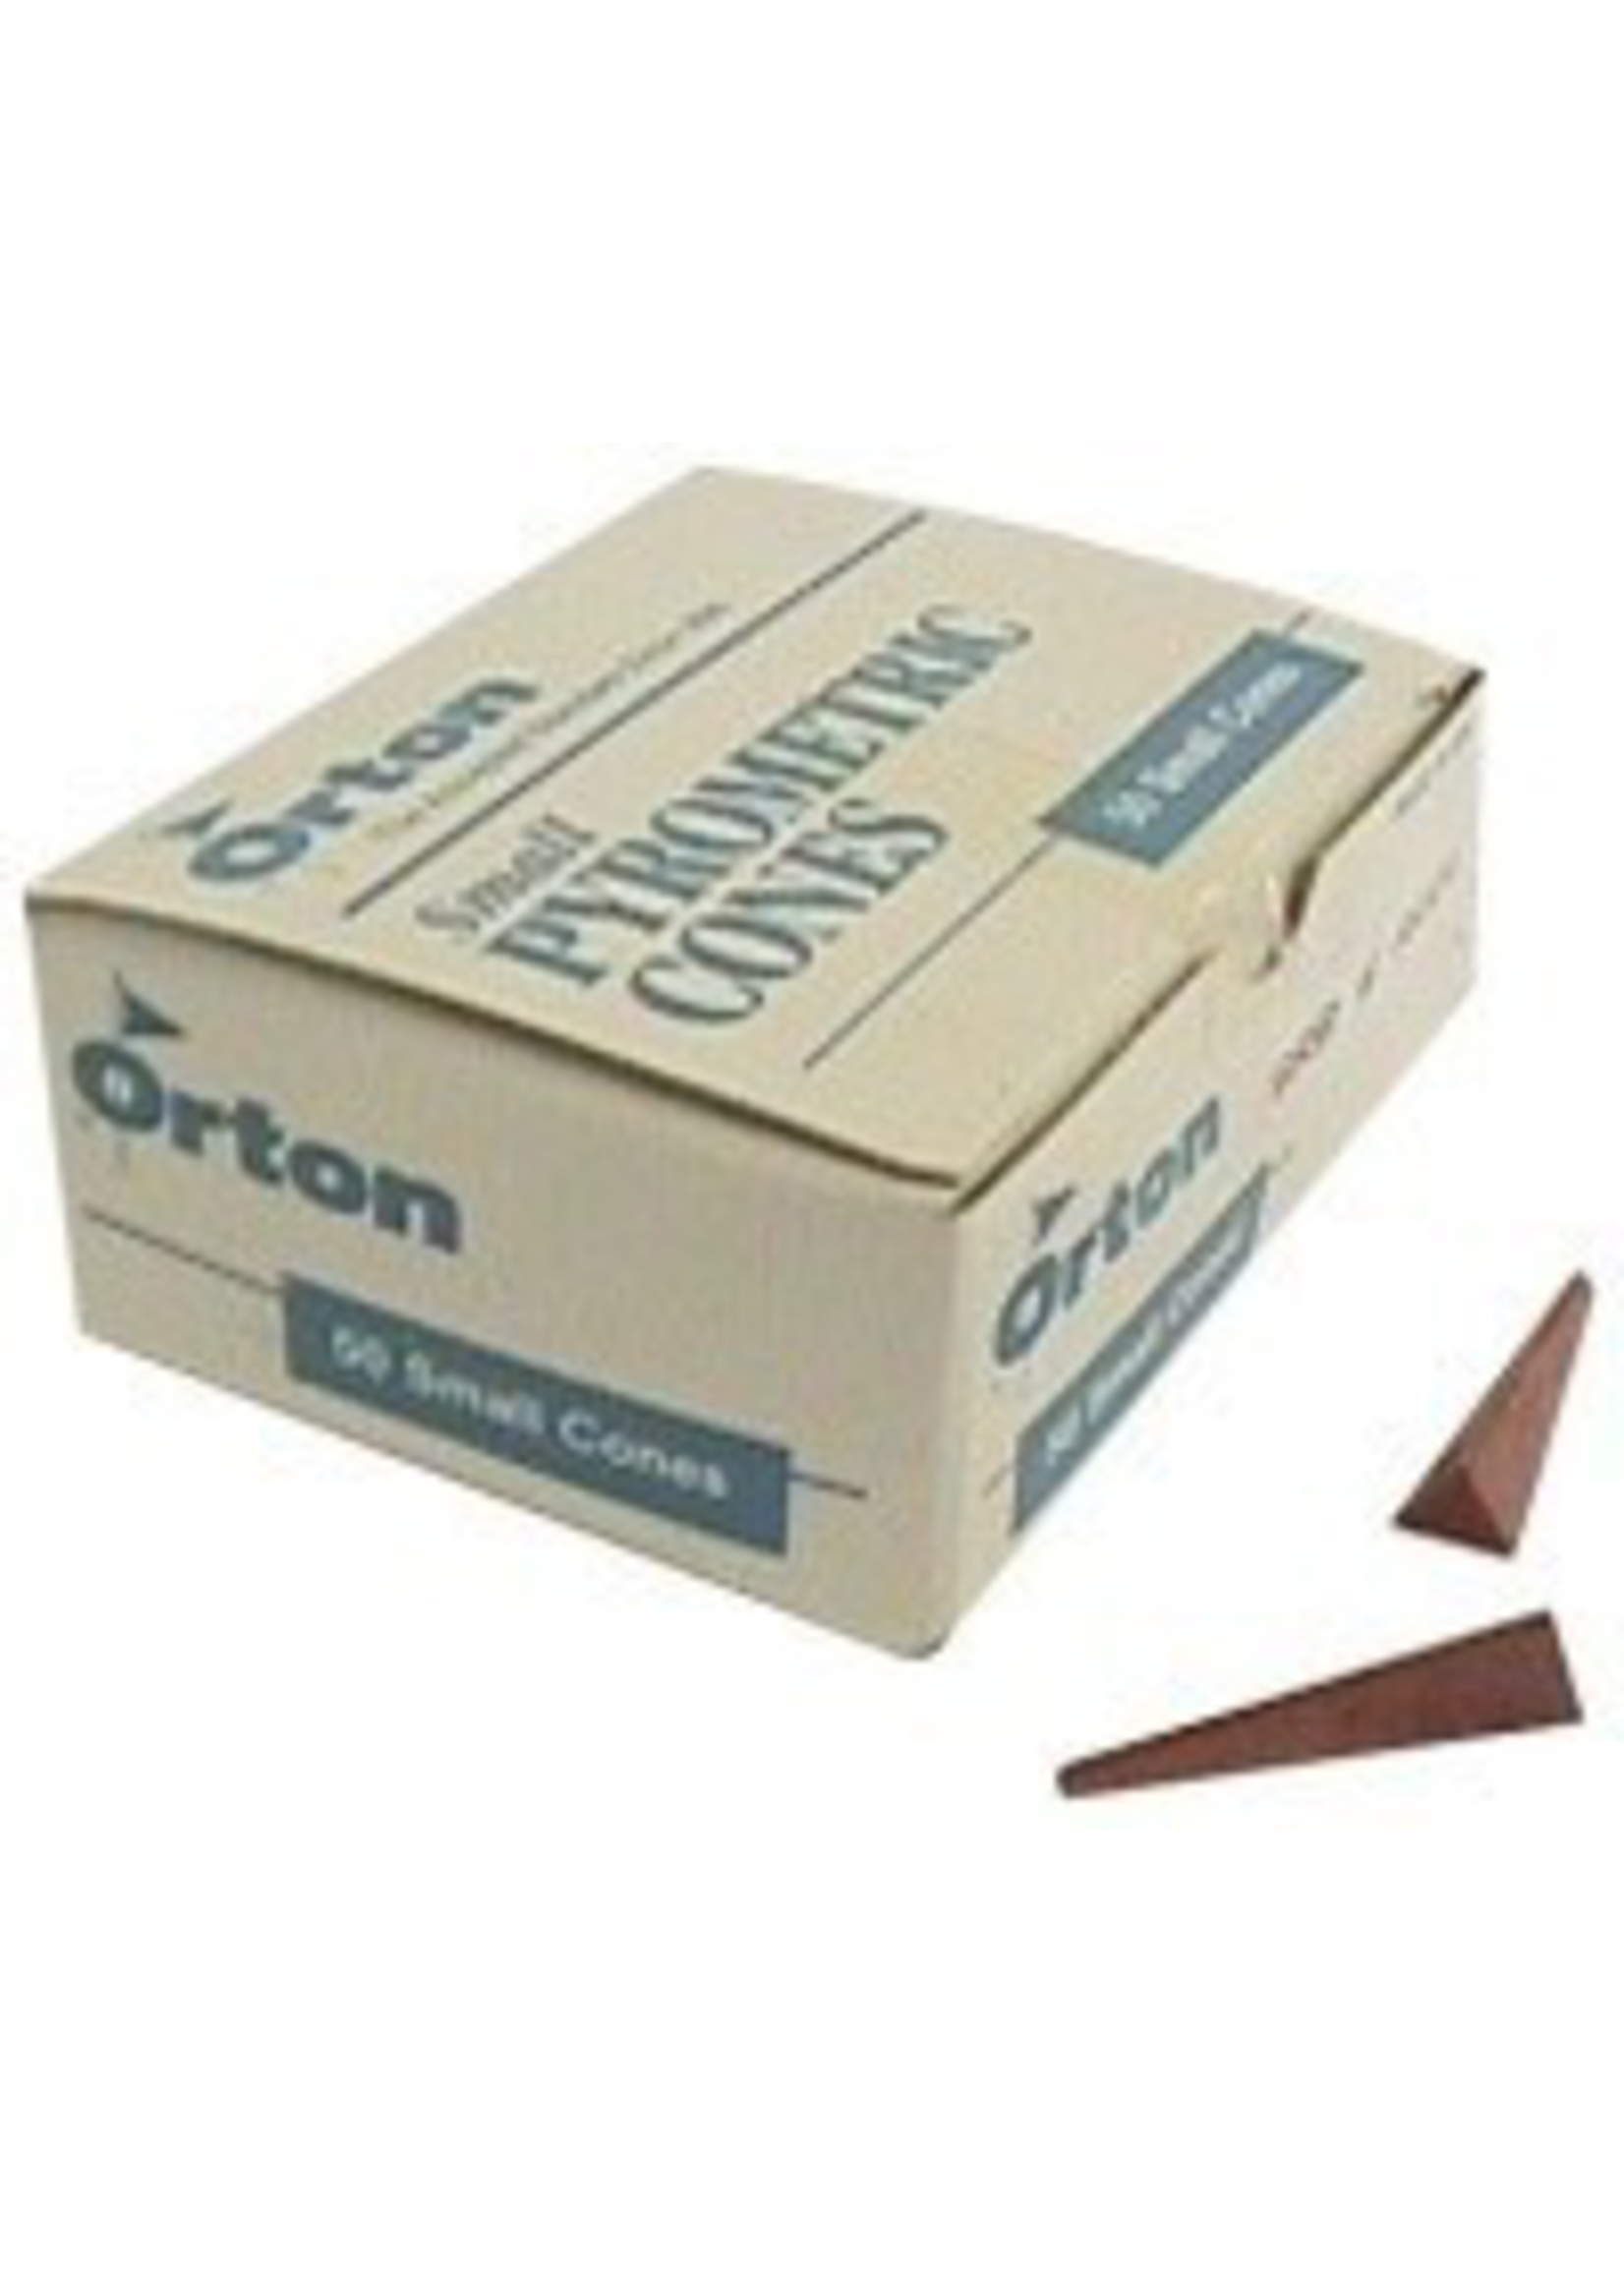 Orton small cone 6 (x10)